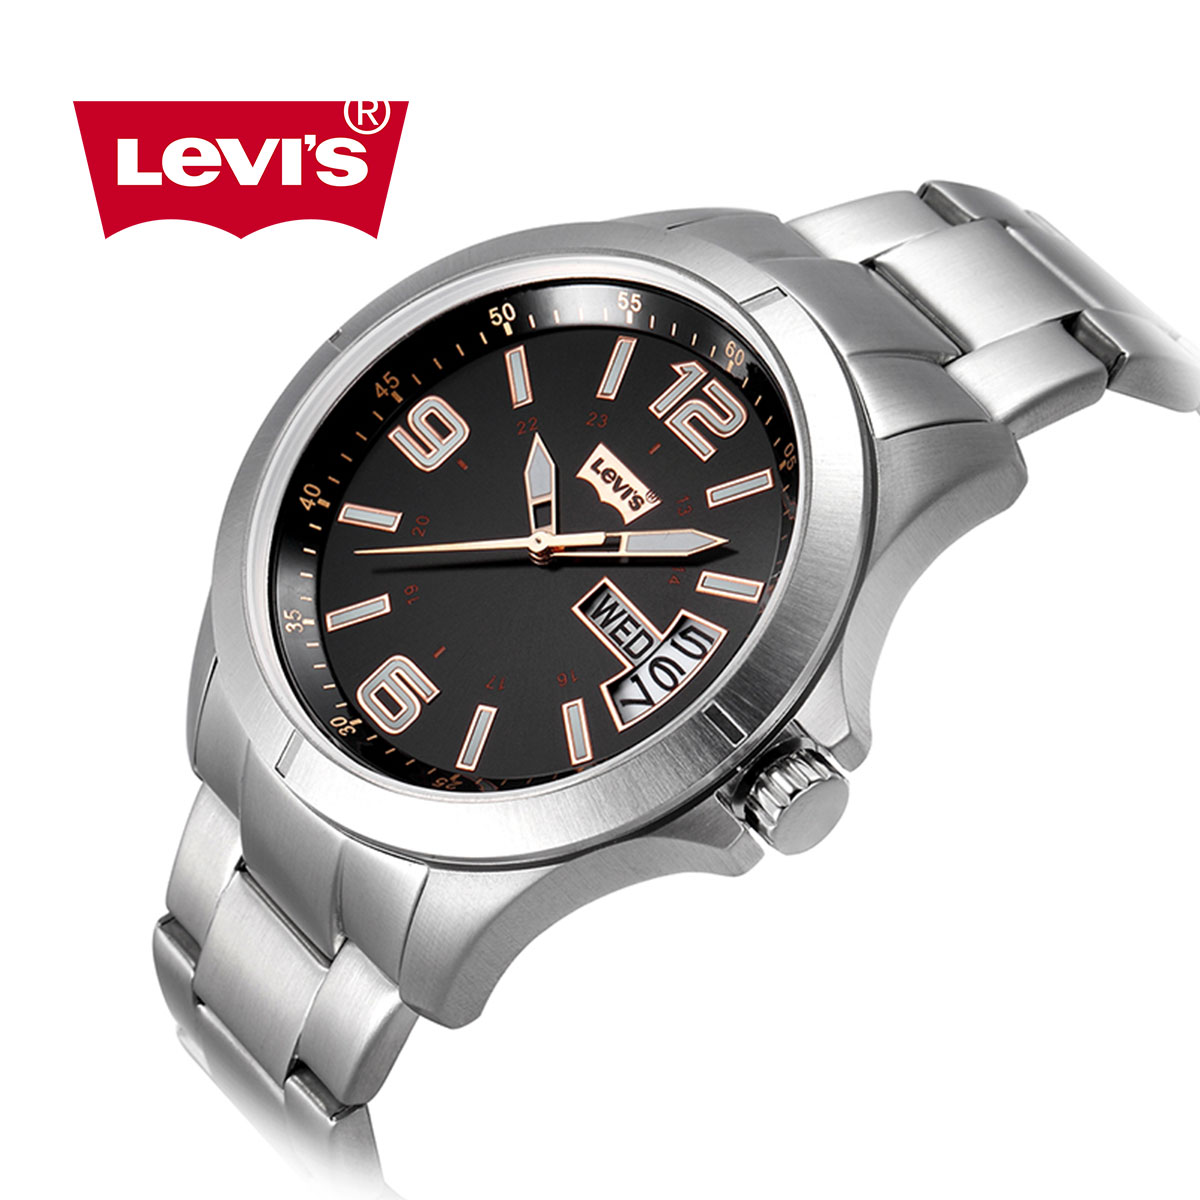 Đồng hồ nam Levis LTJ08 phục cổ tinh xảo